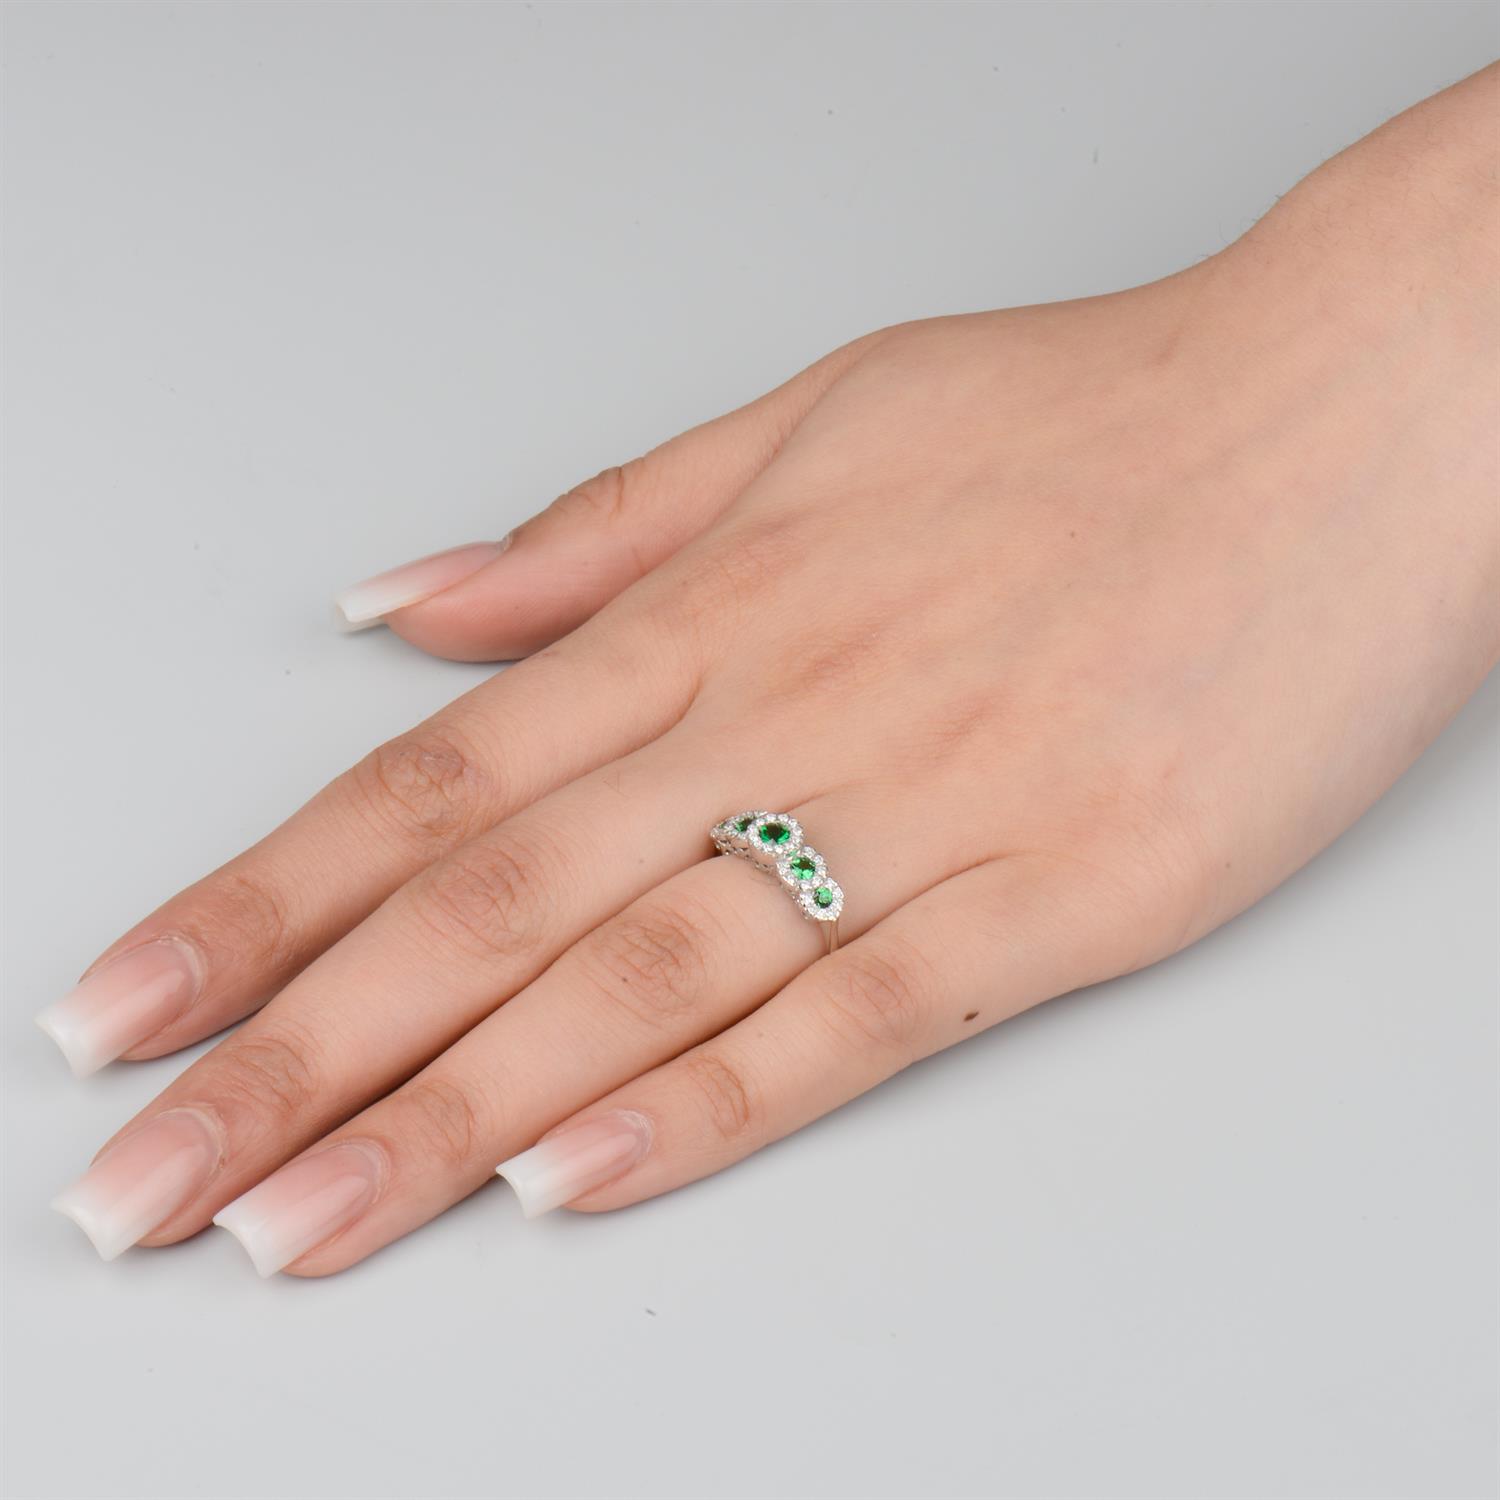 Tsavorite garnet and diamond ring - Image 5 of 5